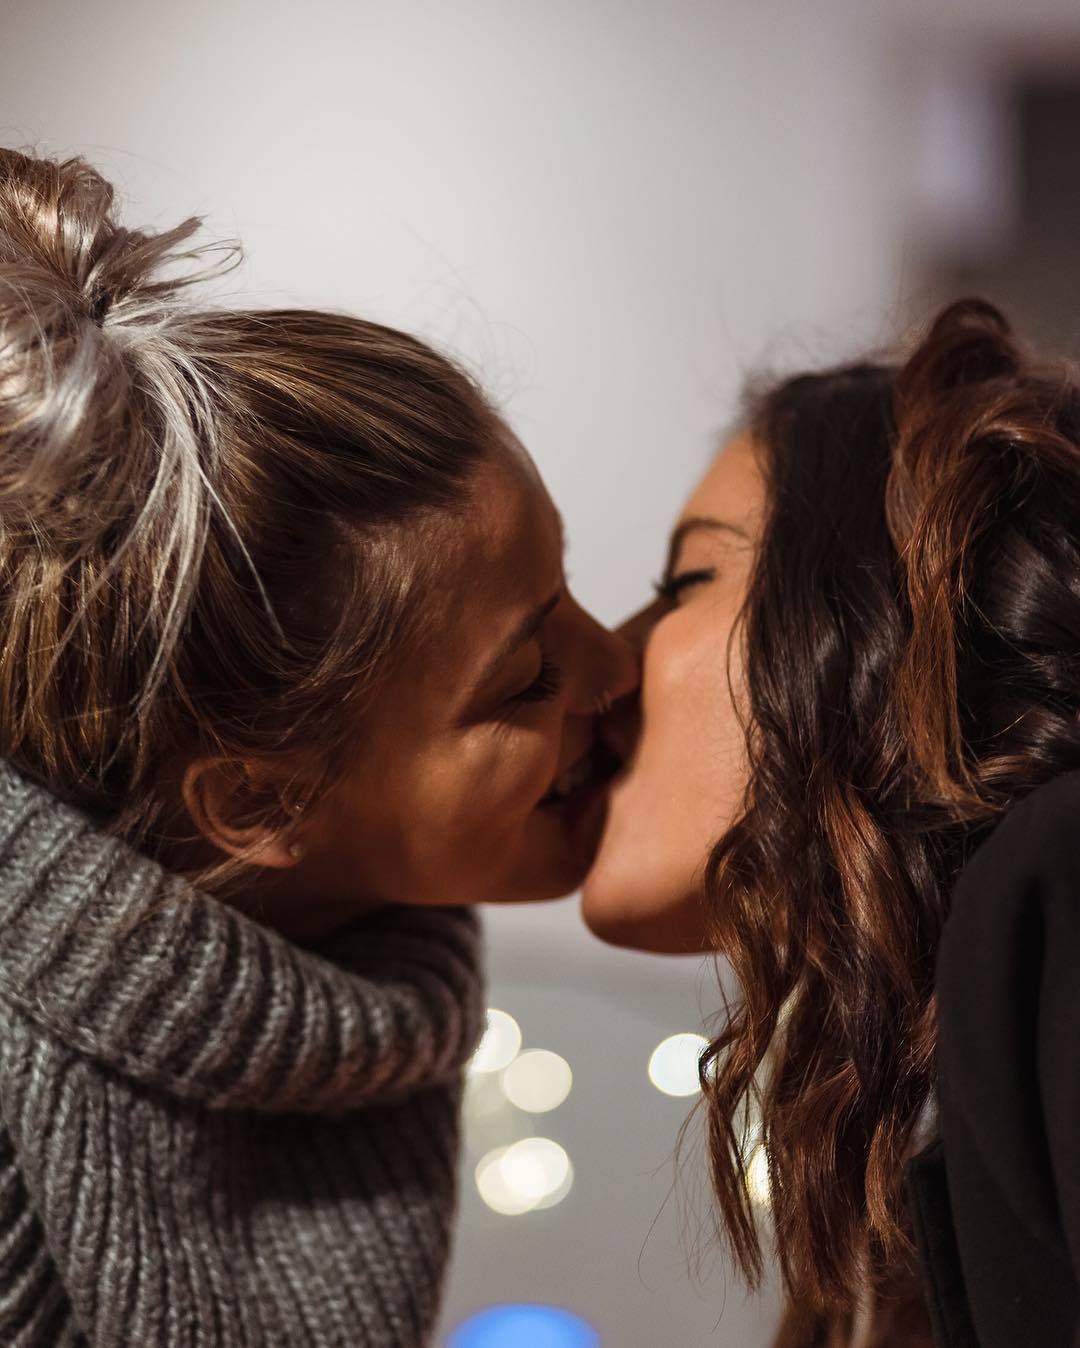 Lesbian 11. Любовь двух женщин. Поцелуй девушек. Девушки целуются. Красивый поцелуй двух девушек.